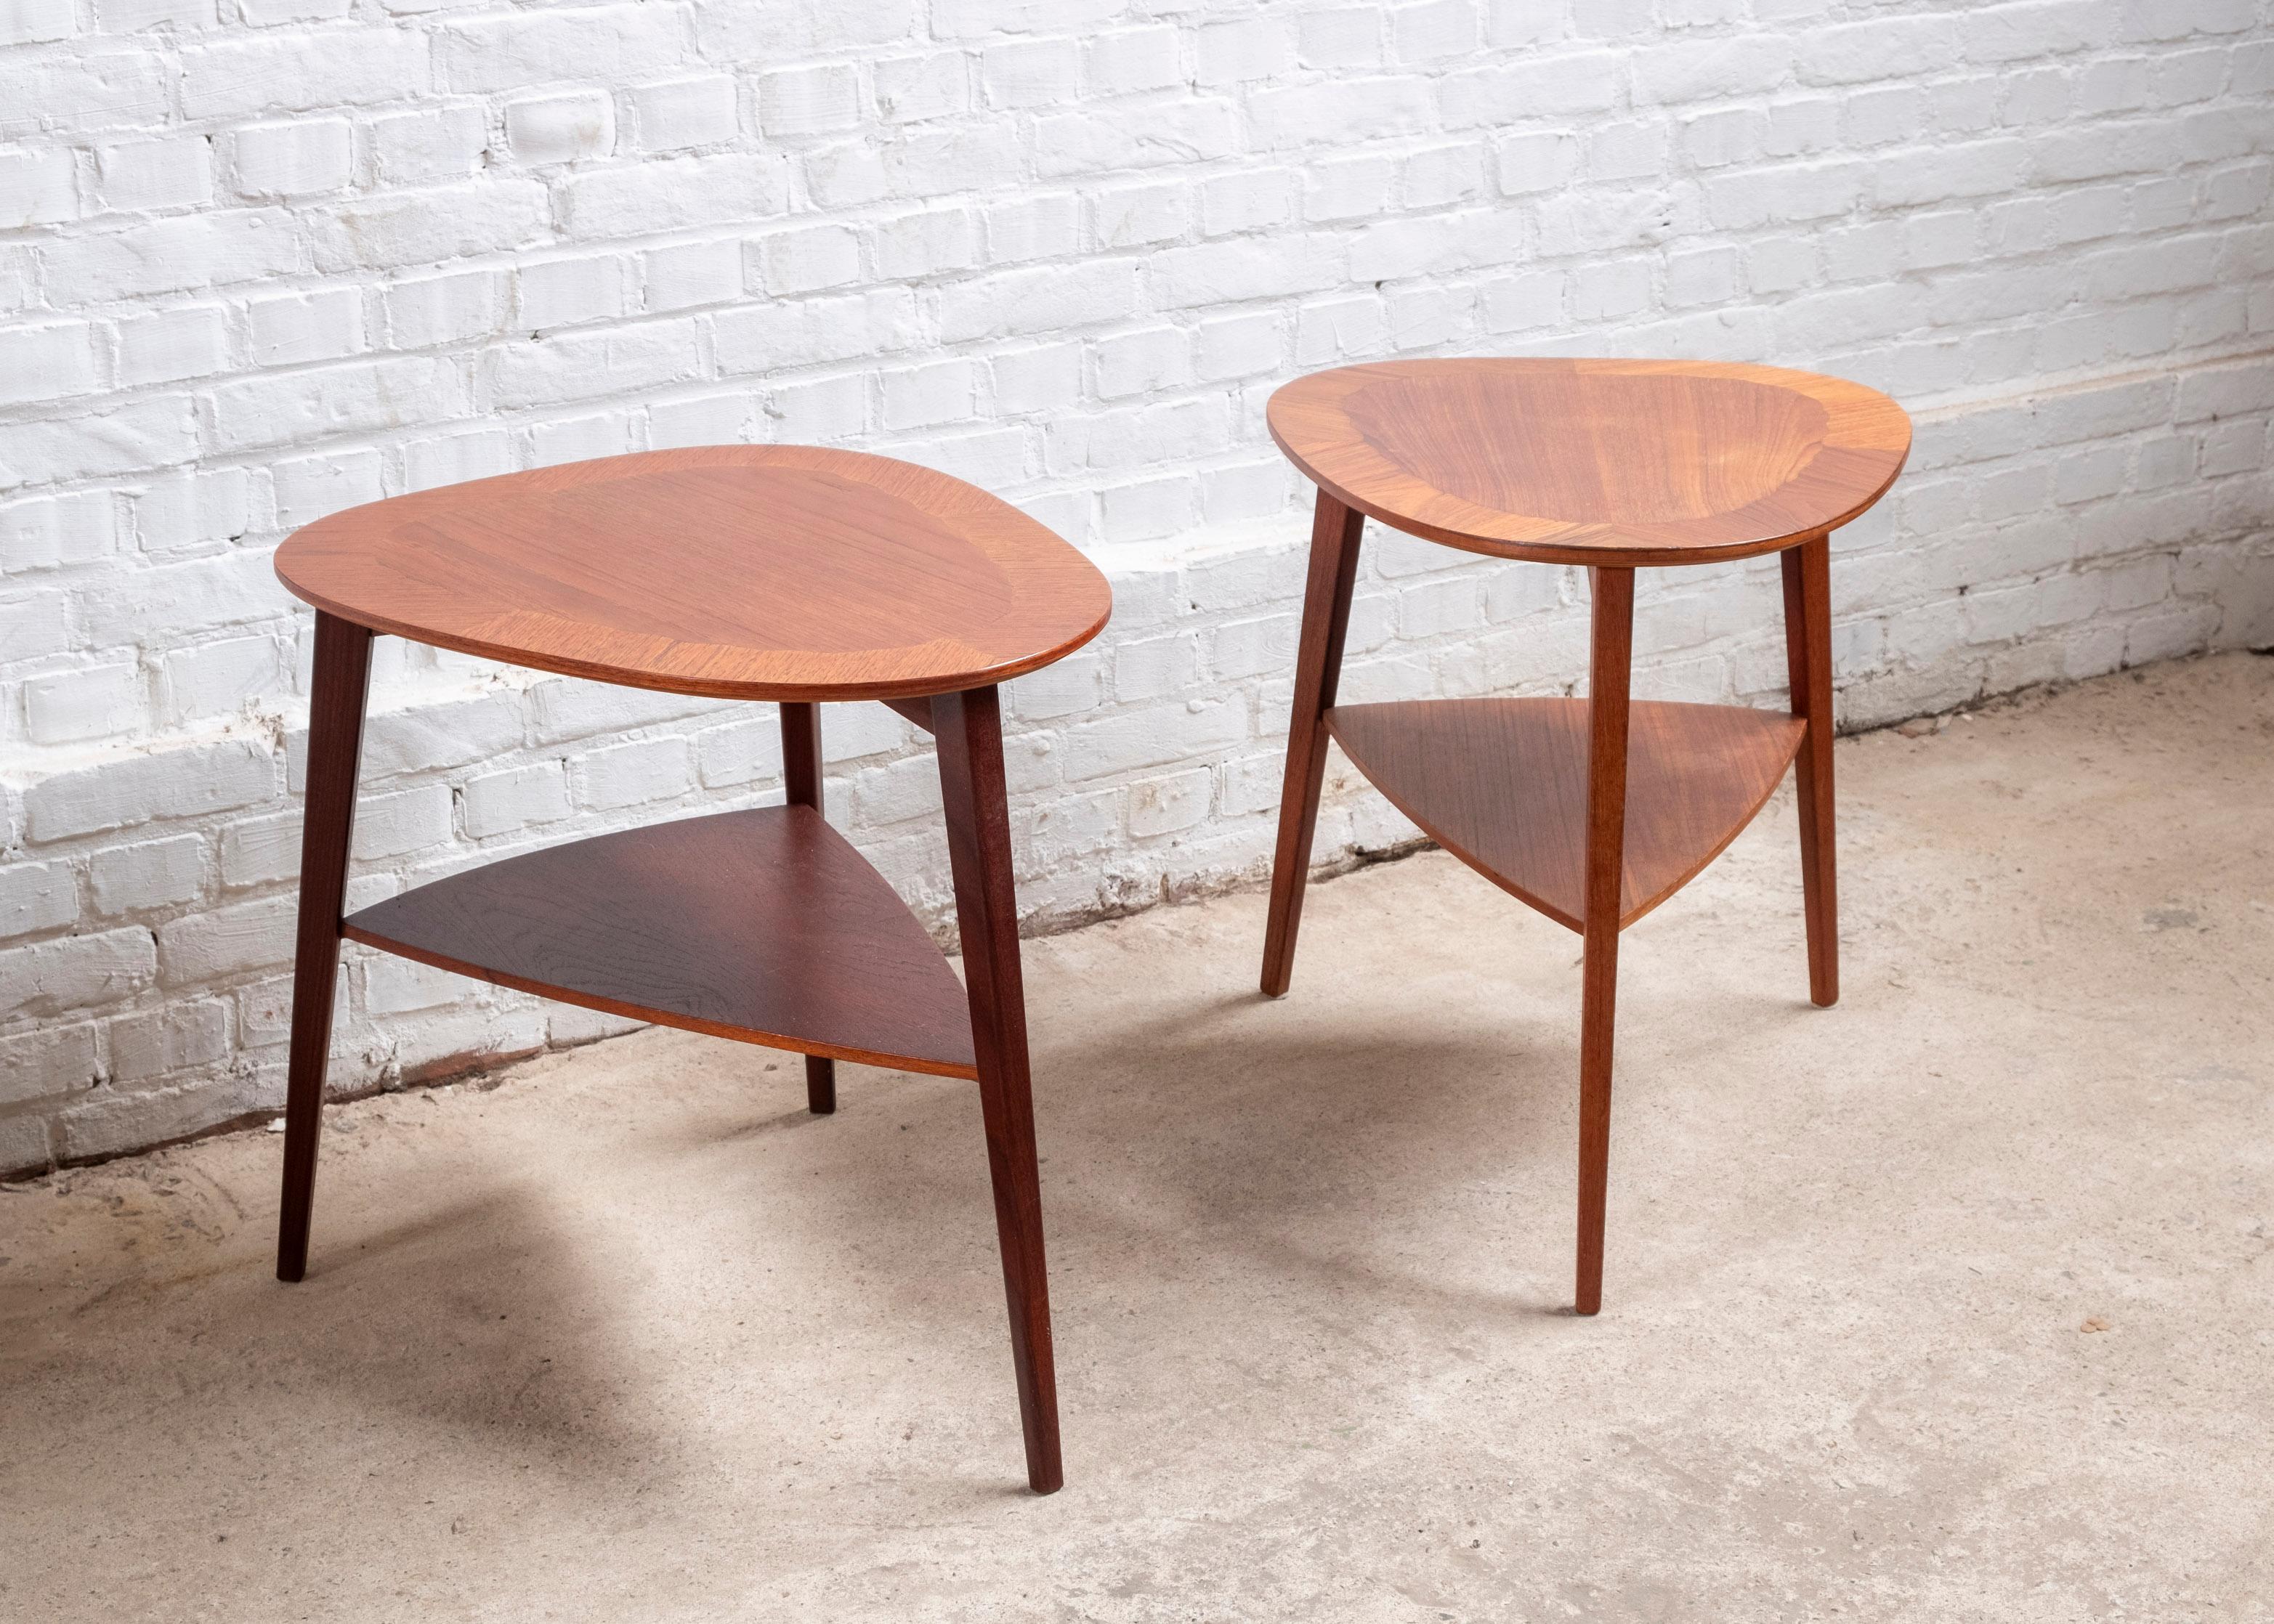 Ein Paar moderne dänische Teakholz-Tische von Holger Georg Jensen für Kubus in Dänemark. Produziert in den 1960er Jahren
Der Tisch ist wunderschön gearbeitet, die Platte zeigt eine geviertelte Umrandung aus kontrastreich gemasertem Teakholz, mit